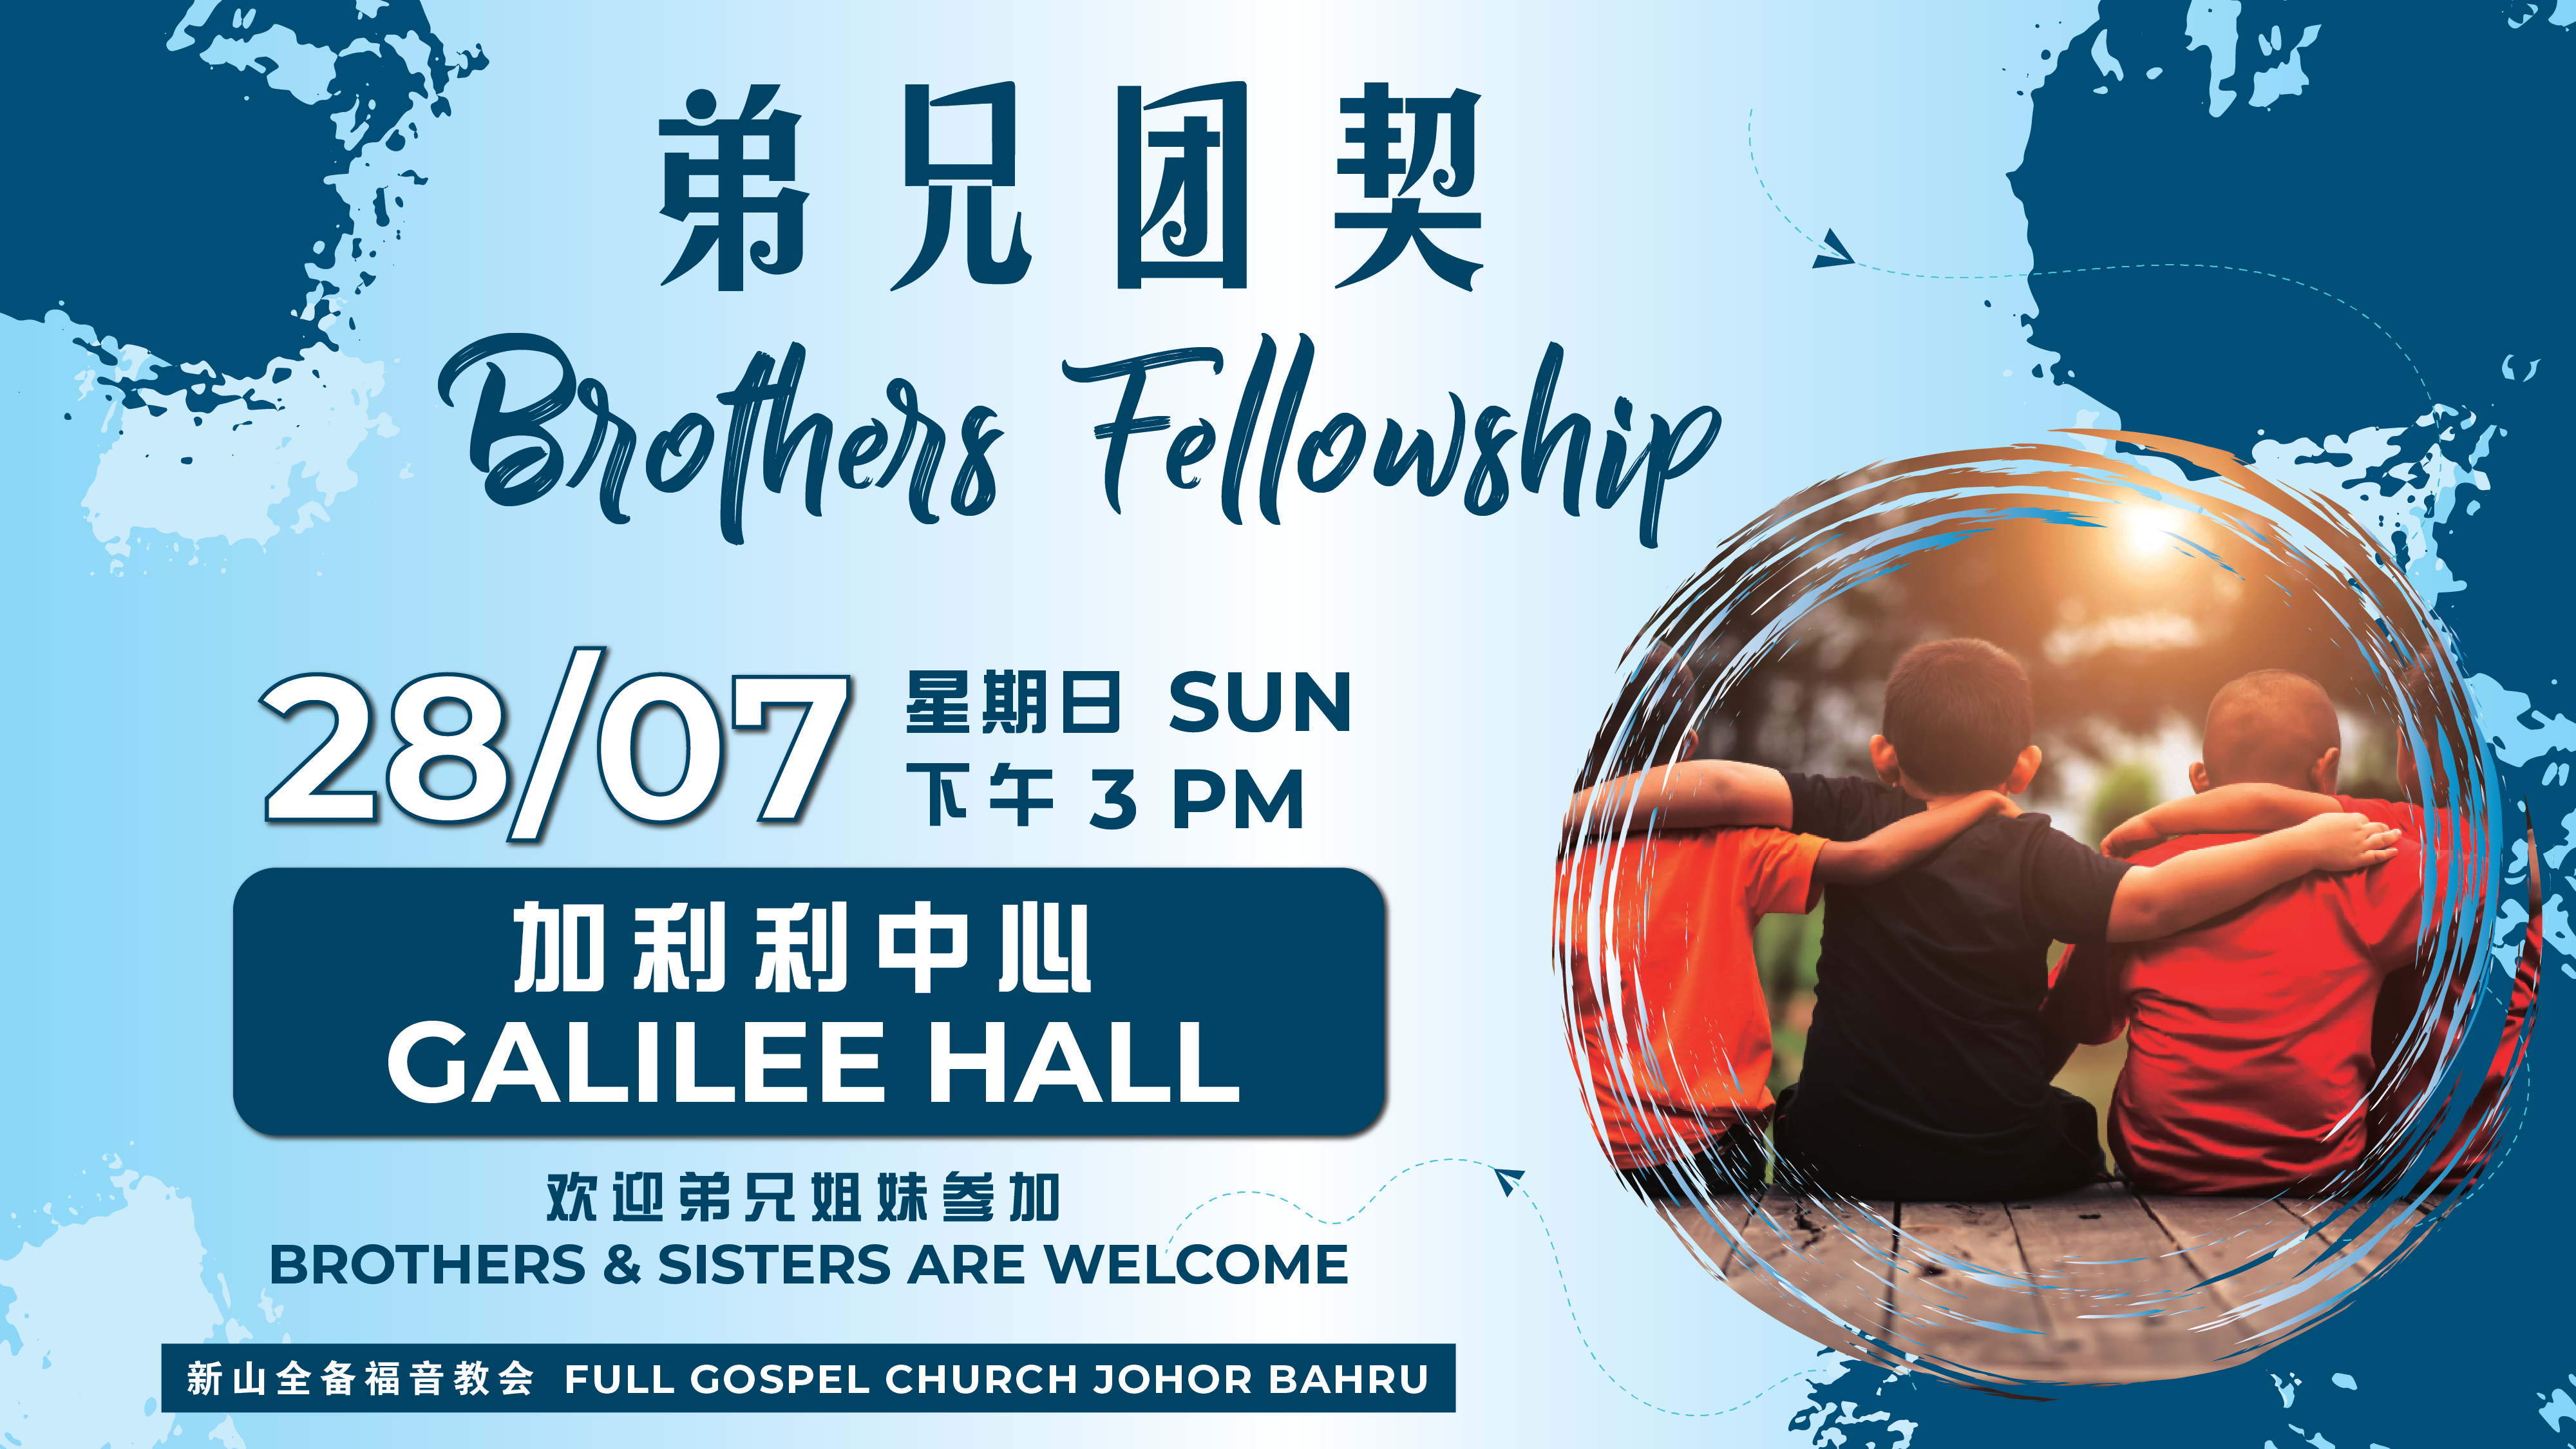 弟兄团契 Brothers Fellowship - Jul24